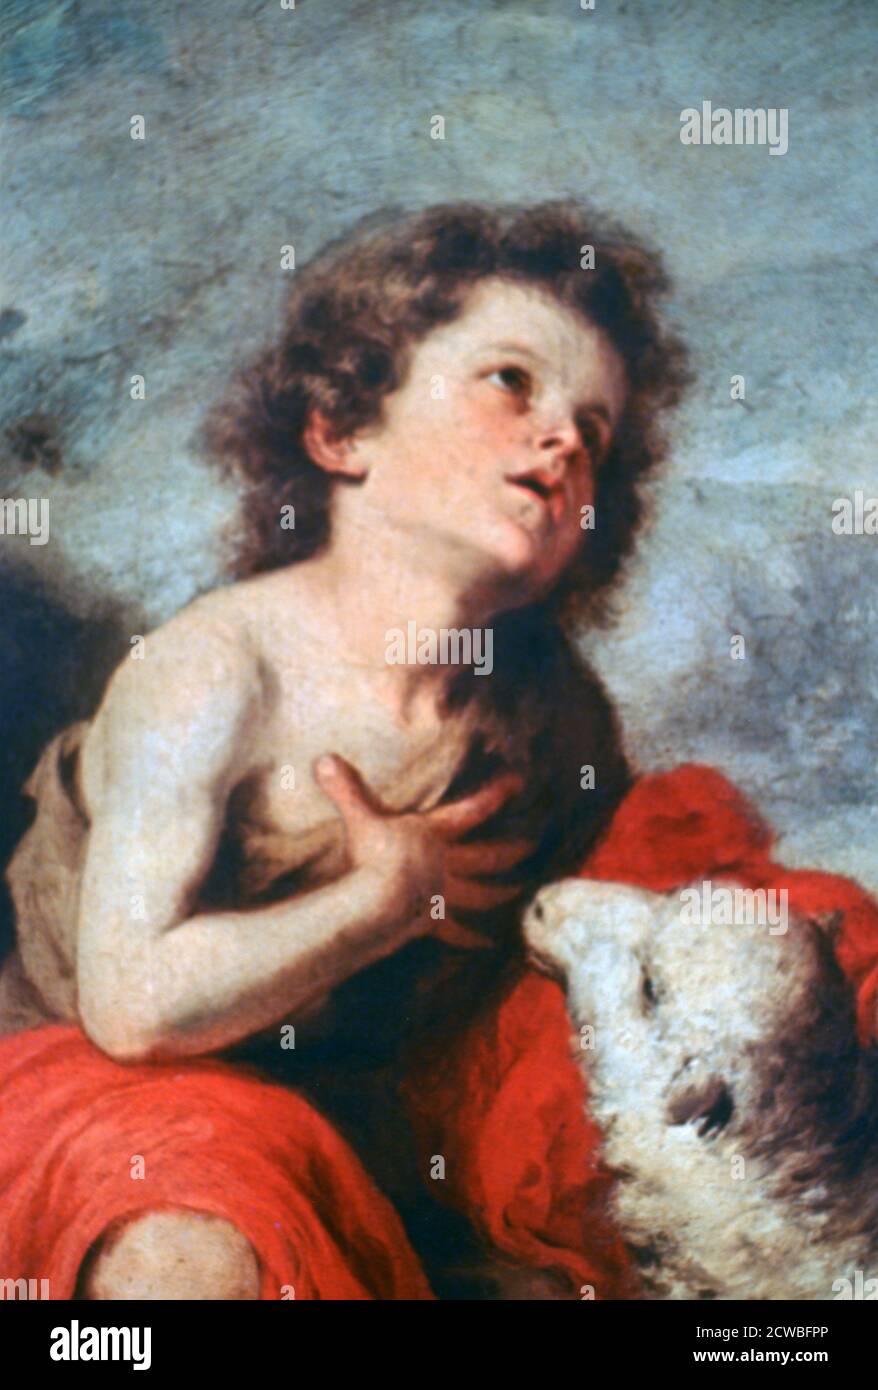 Saint Jean-Baptiste comme enfant, c1665. Artiste: Bartolome Esteban Murillo. Bartolome Esteban Murillo(1617-1682) était un peintre baroque espagnol, plus connu pour ses œuvres religieuses. Banque D'Images